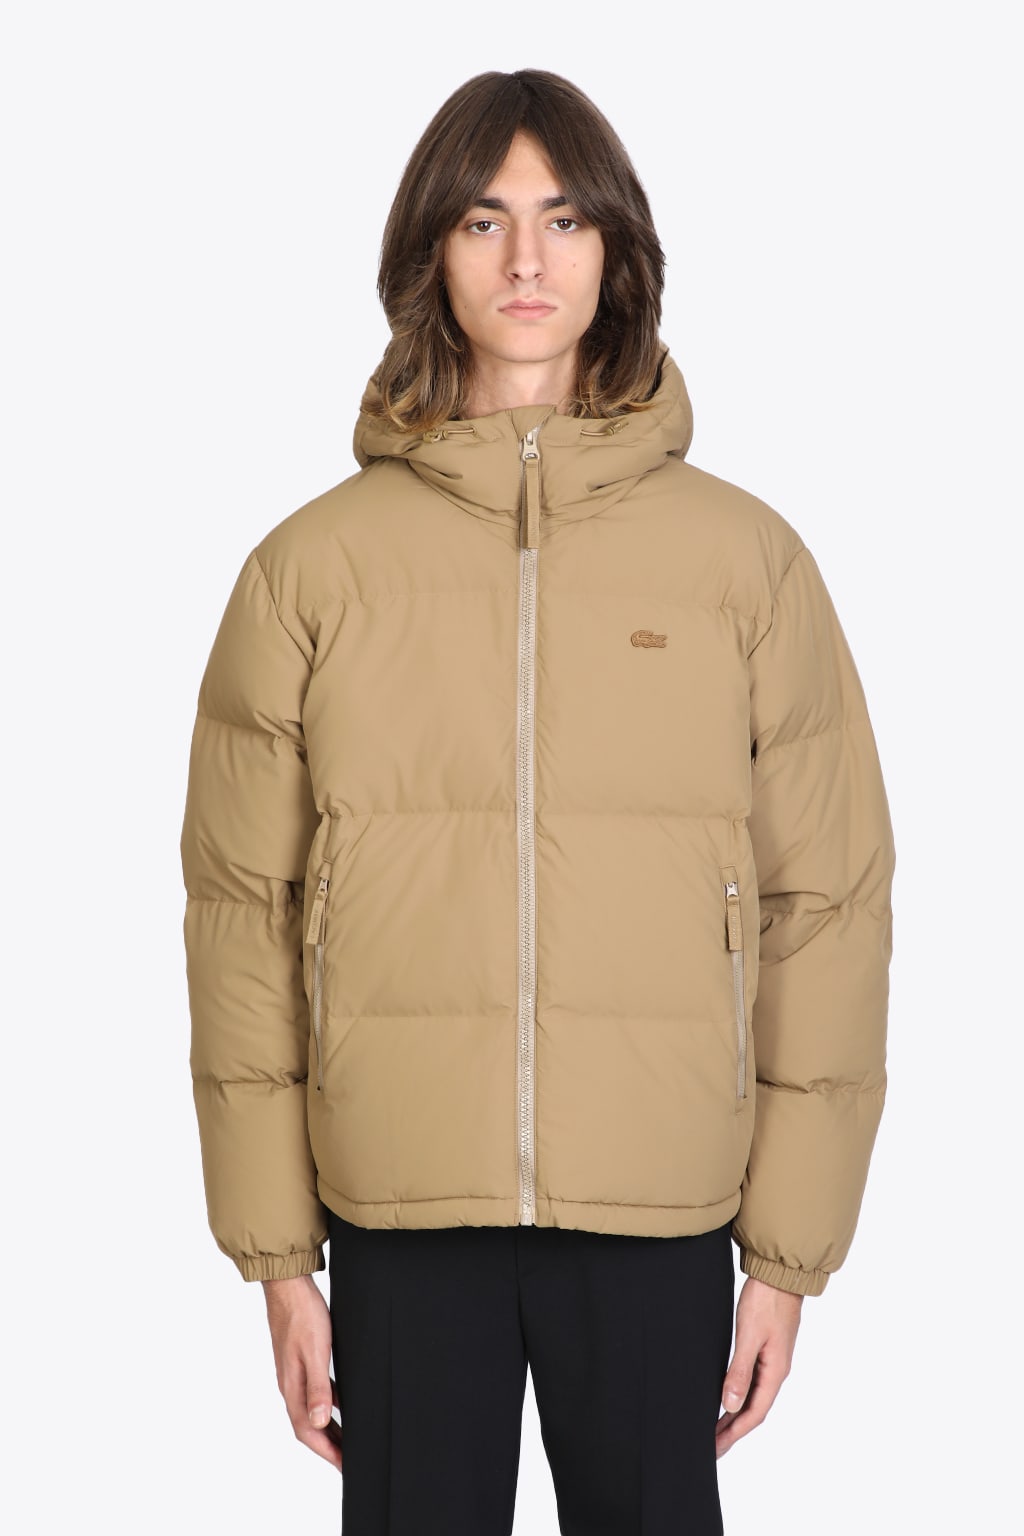 Lacoste Blusone Beige nylon hooded puffer jacket.